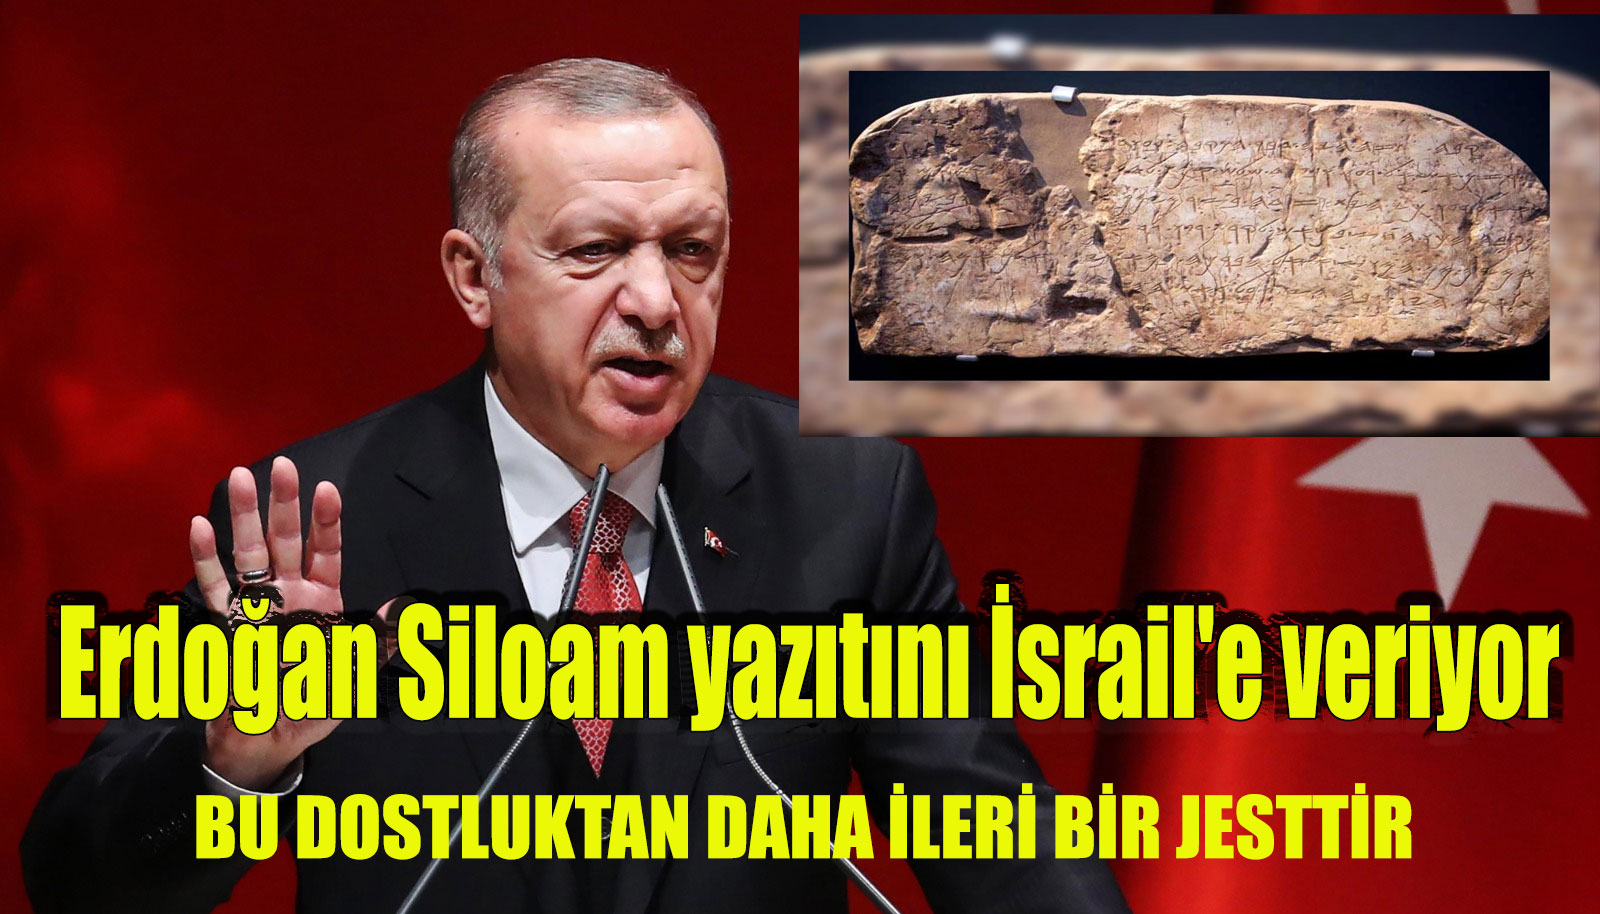 Ak partili Cumhurbaşkanı Erdoğan Siloam yazıtını İsrail’e veriyor! Çok yanlış adım çok!